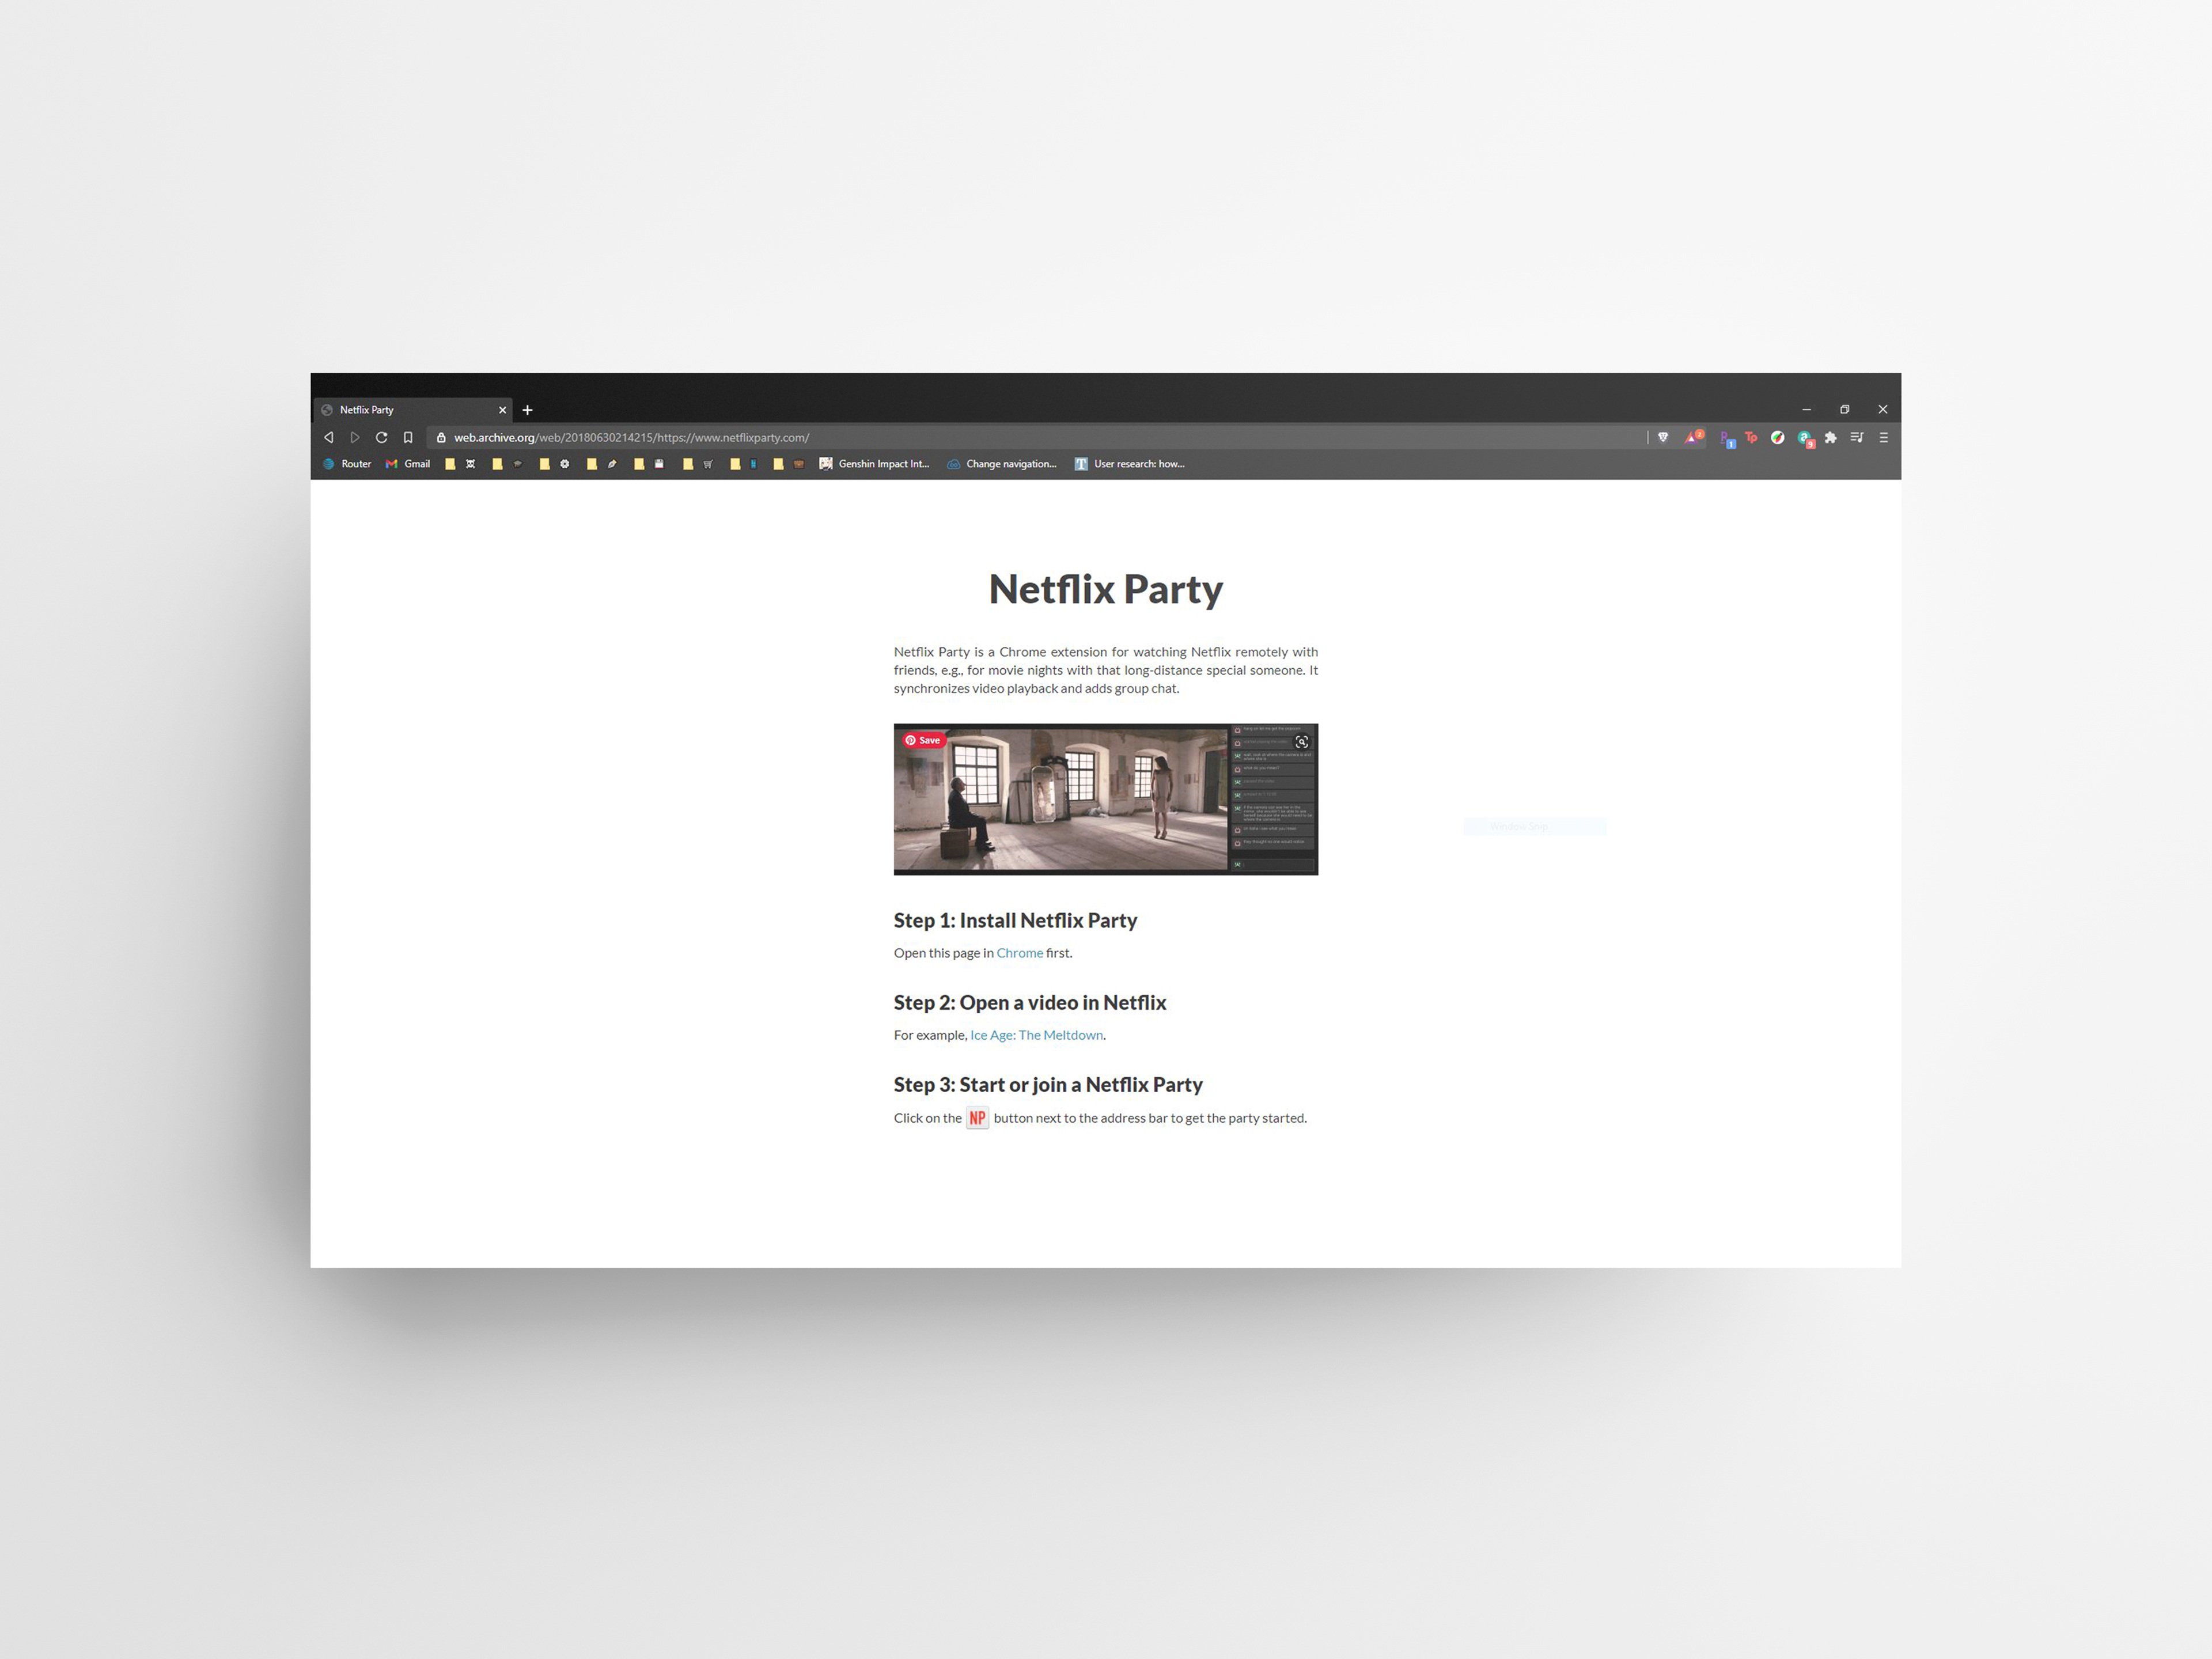 NetflixParty's original website in 2018